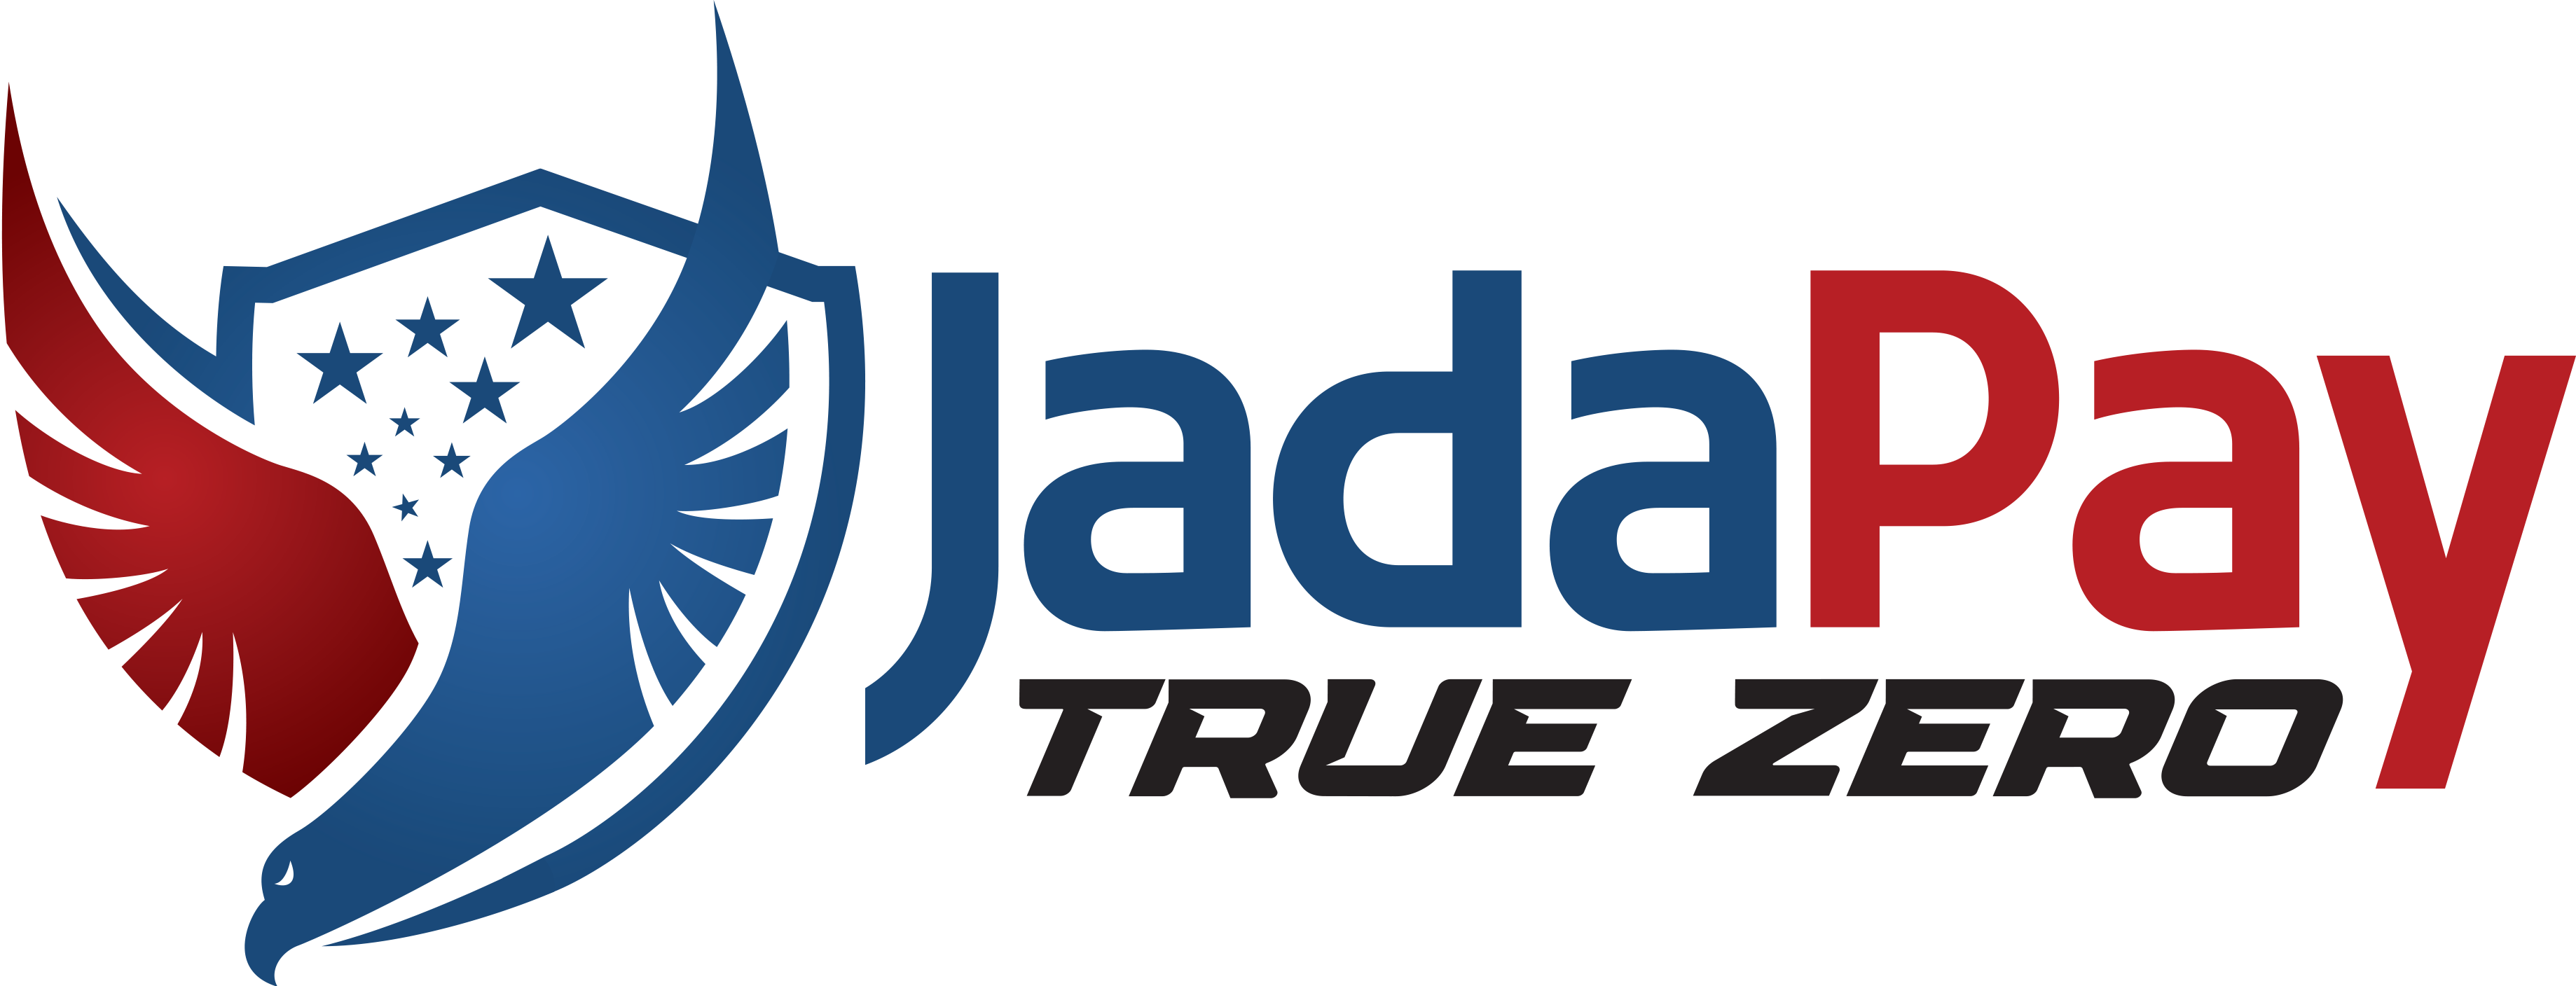 JadaPayPatriot Promise